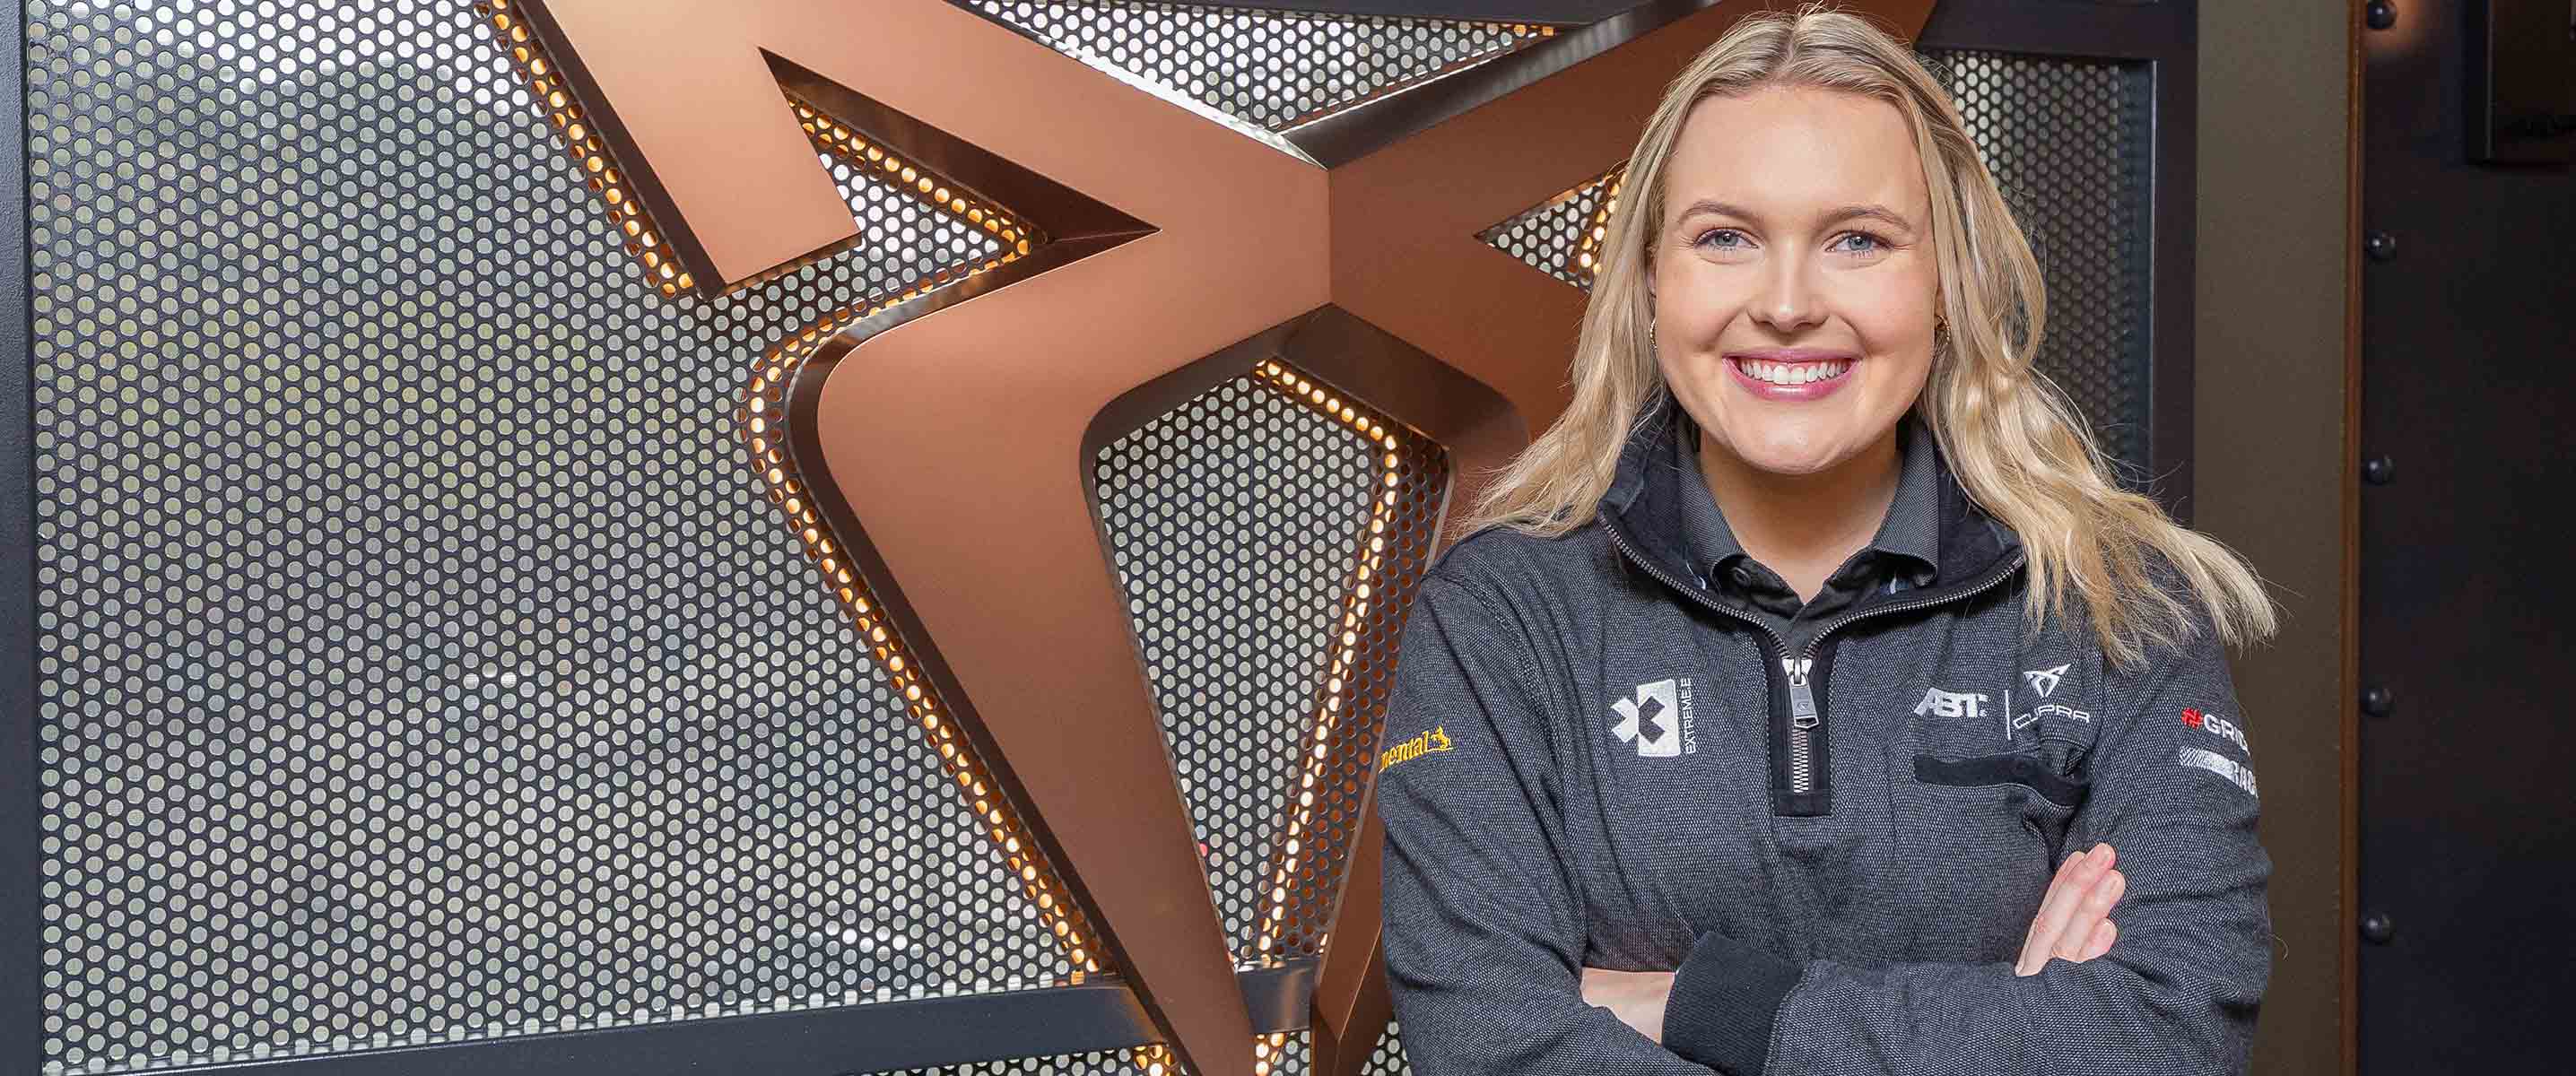 Klara Andersson, piloto de ABT CUPRA XE: “Esta temporada de Extreme E vamos por el título”